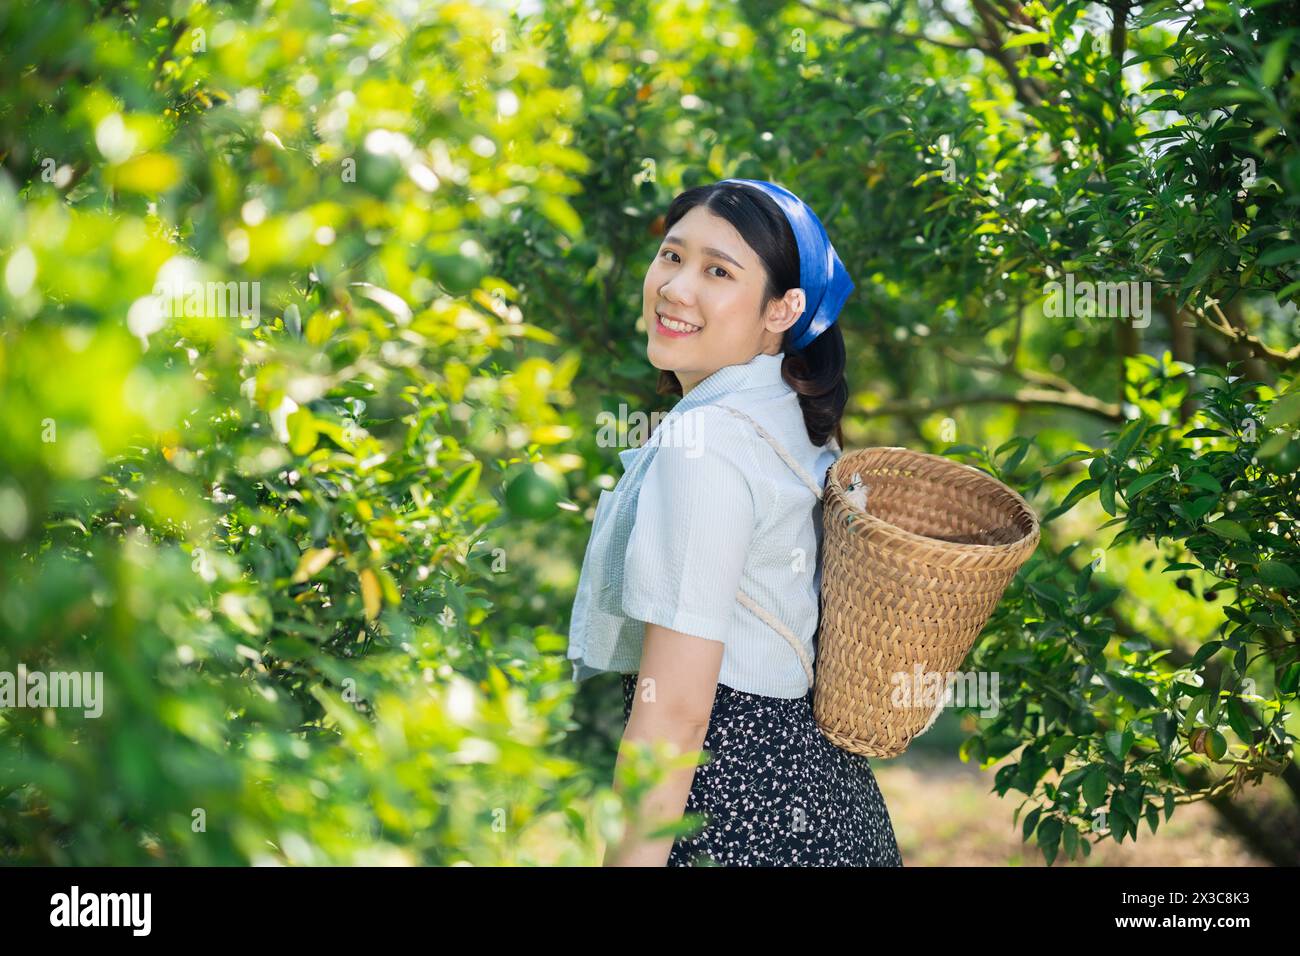 Glückliche Frauen auf der Orangenfarm. Ländliche asiatische Frau, die im ökologischen Landbau arbeitet, Orangenobst-Baum. Stockfoto